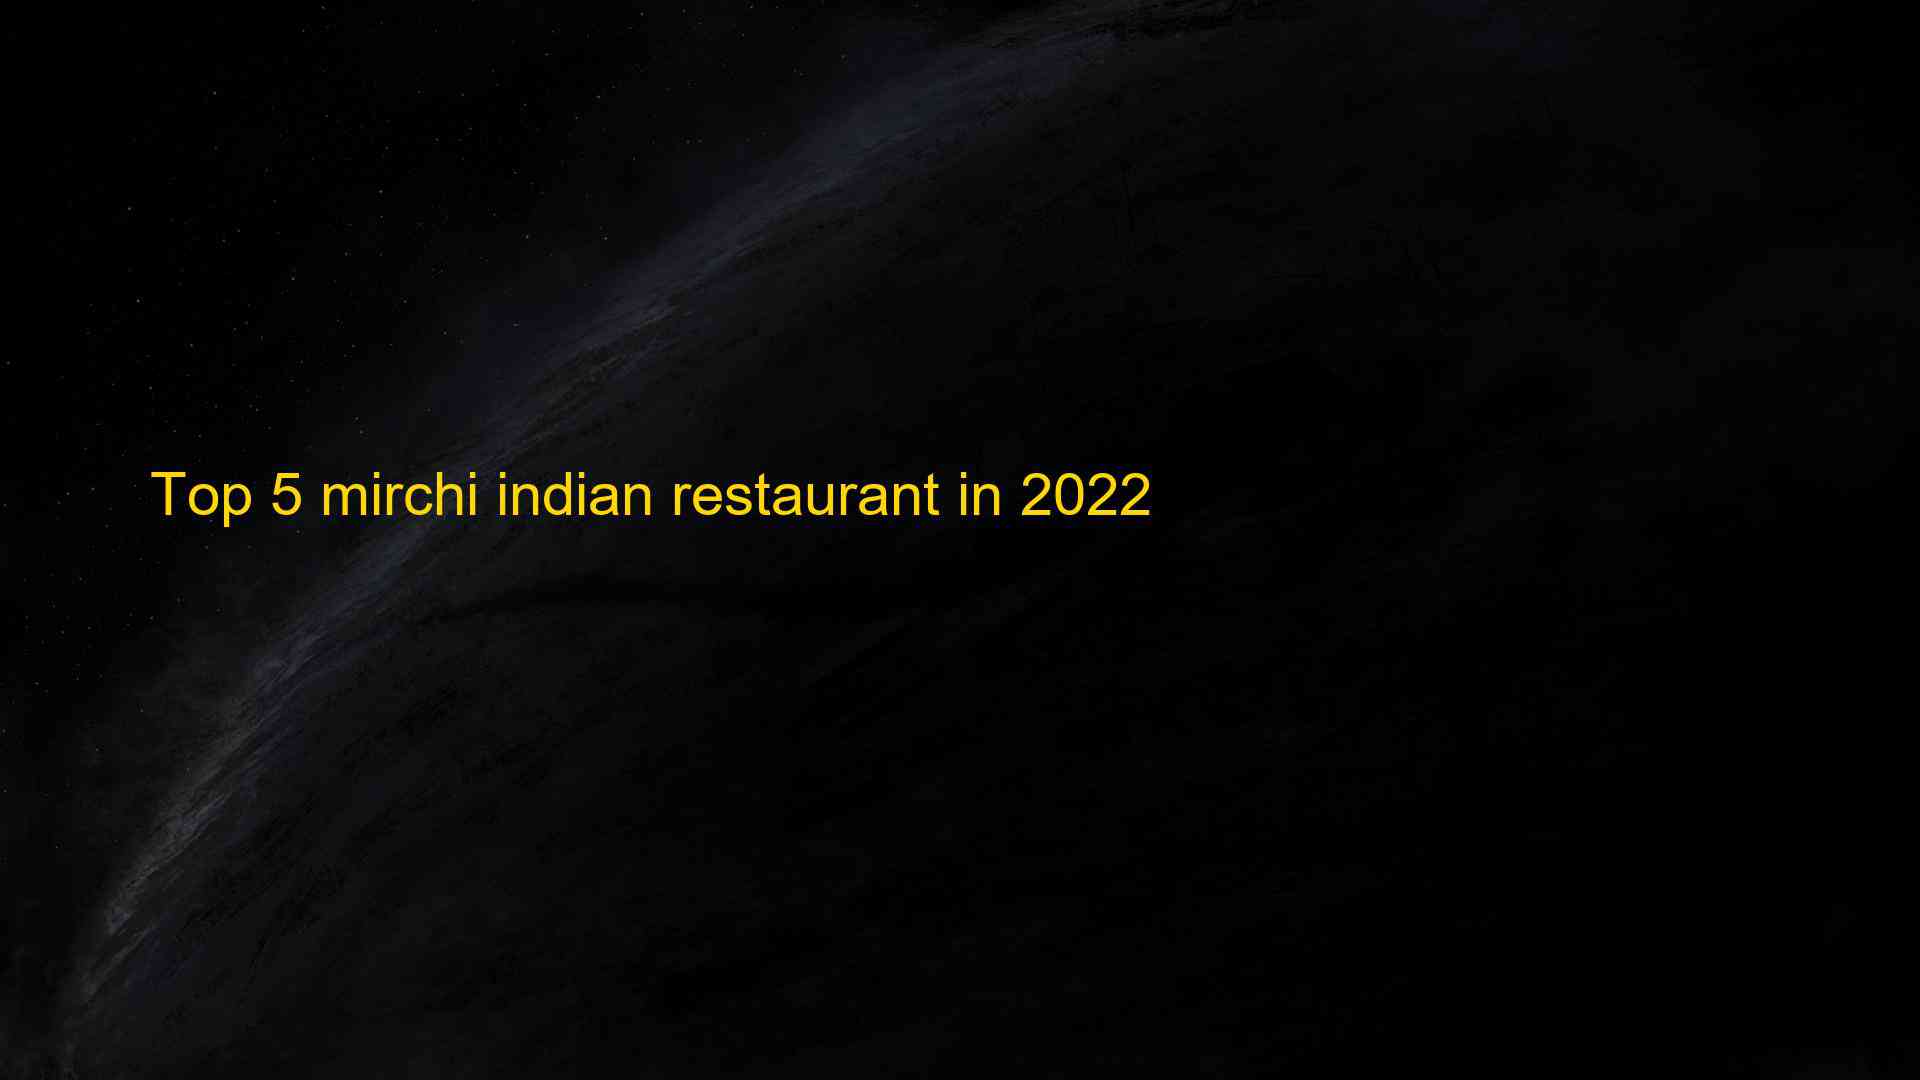 Top 5 mirchi indian restaurant in 2022 1663403209